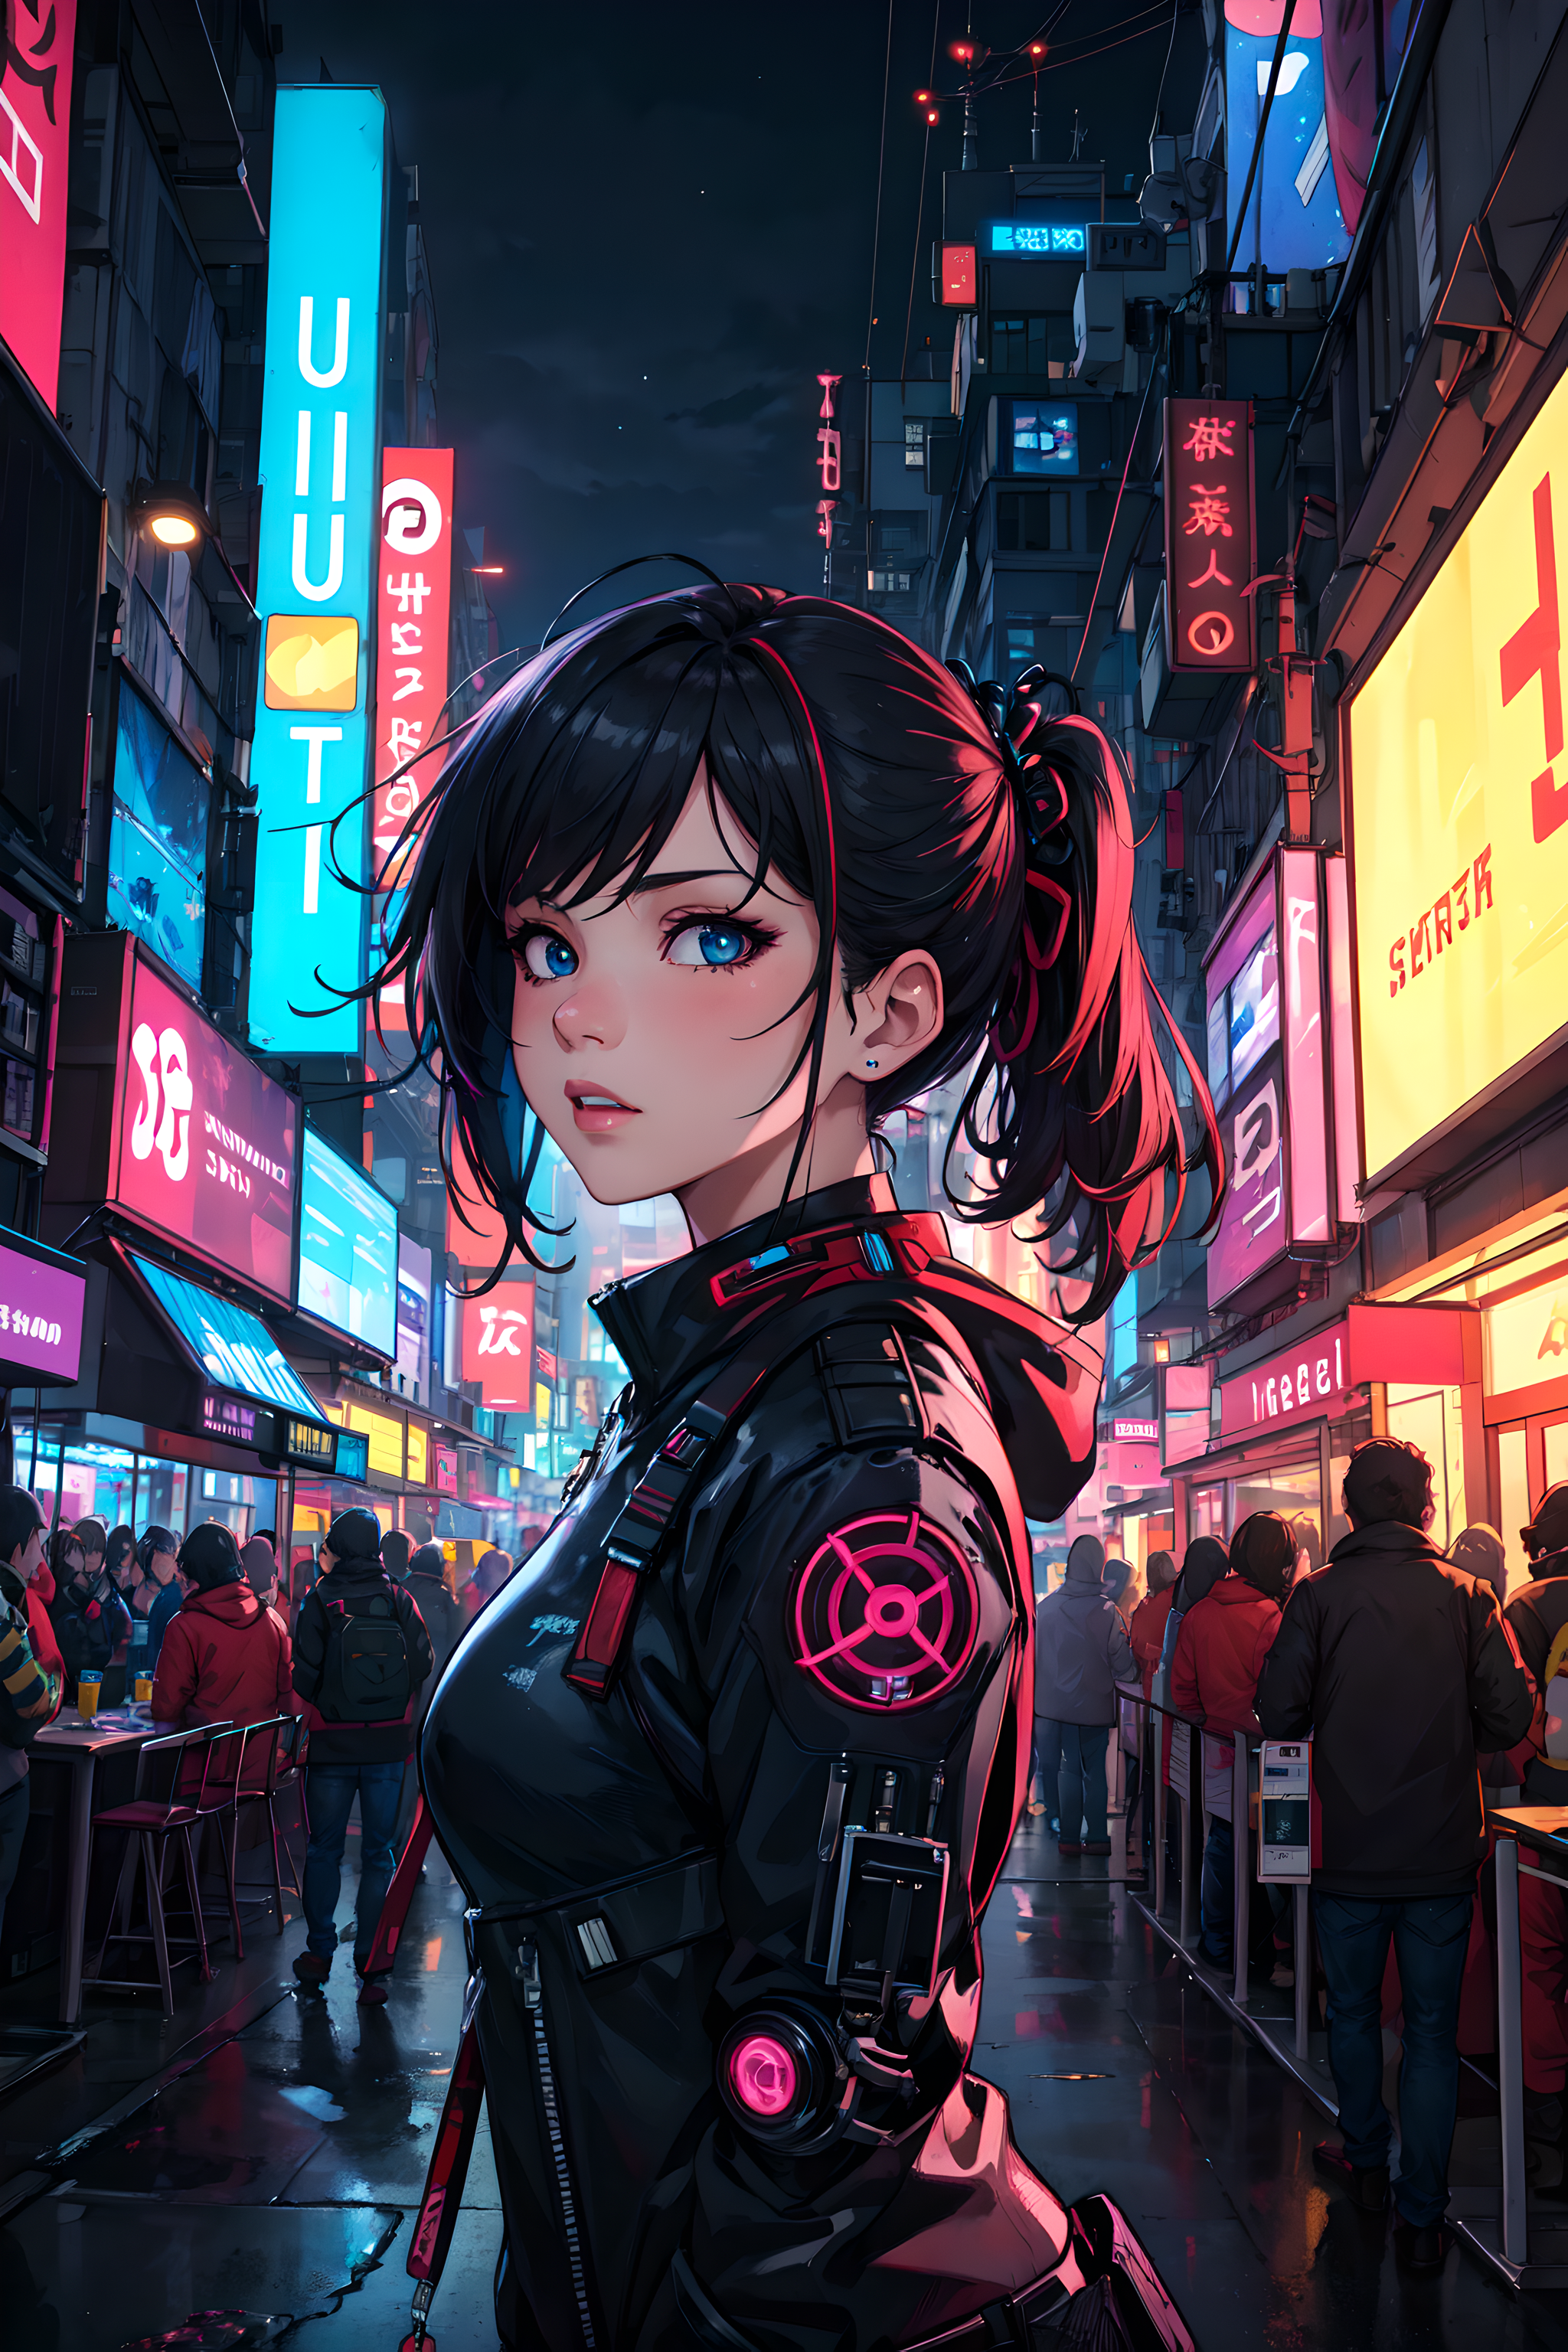 Cyberpunk girl by lXlBaNNeR on DeviantArt